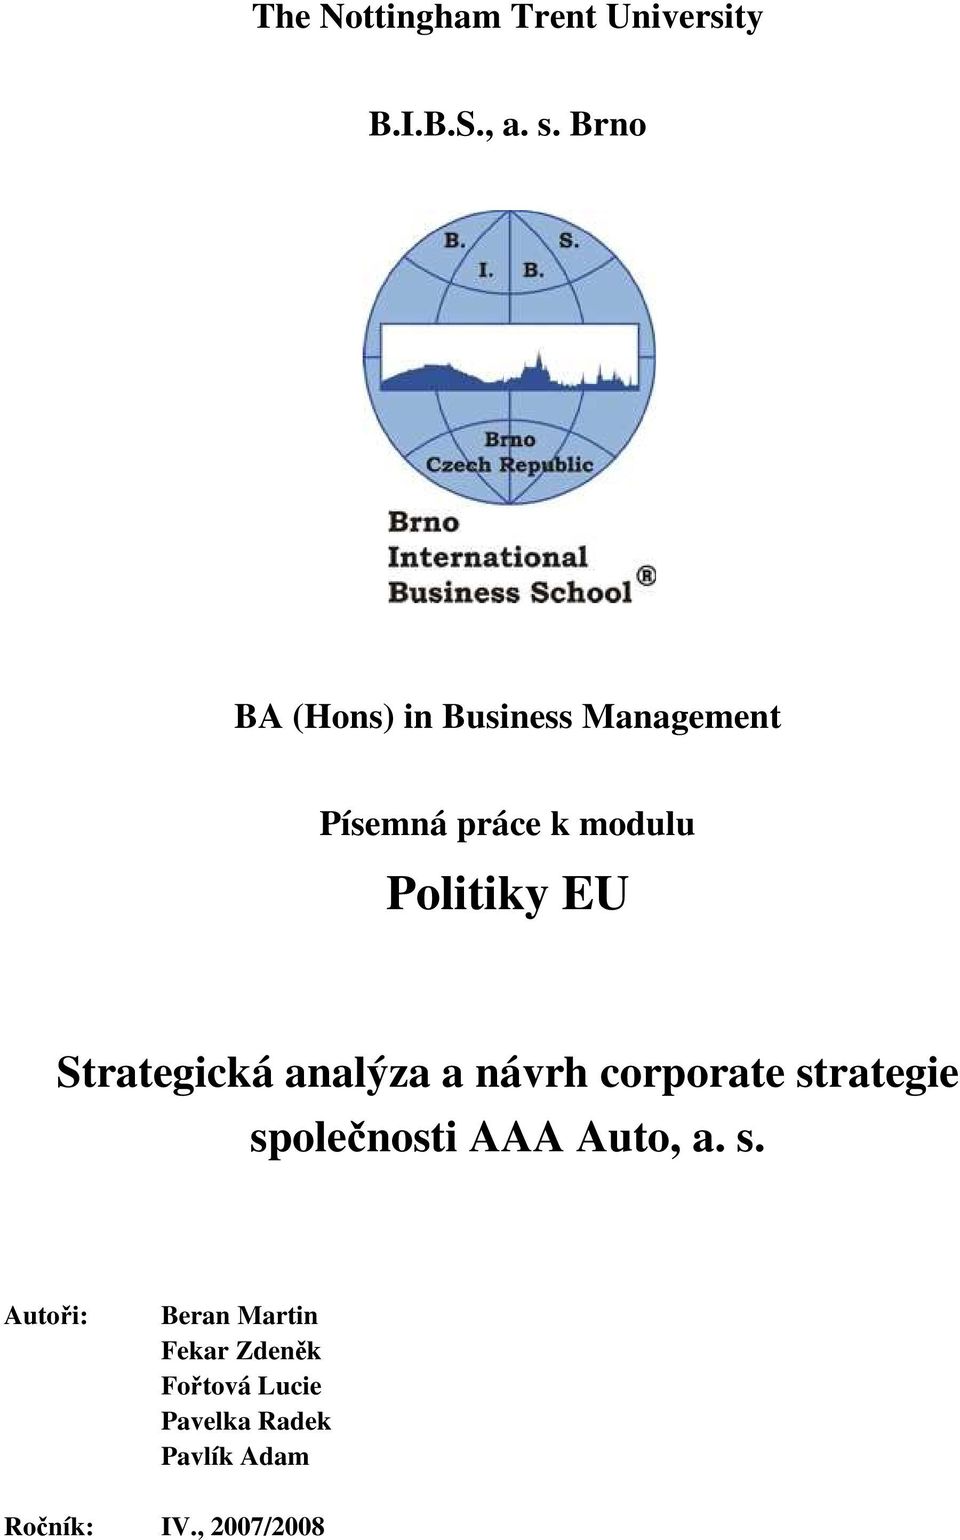 Strategická analýza a návrh corporate strategie společnosti AAA Auto, a.